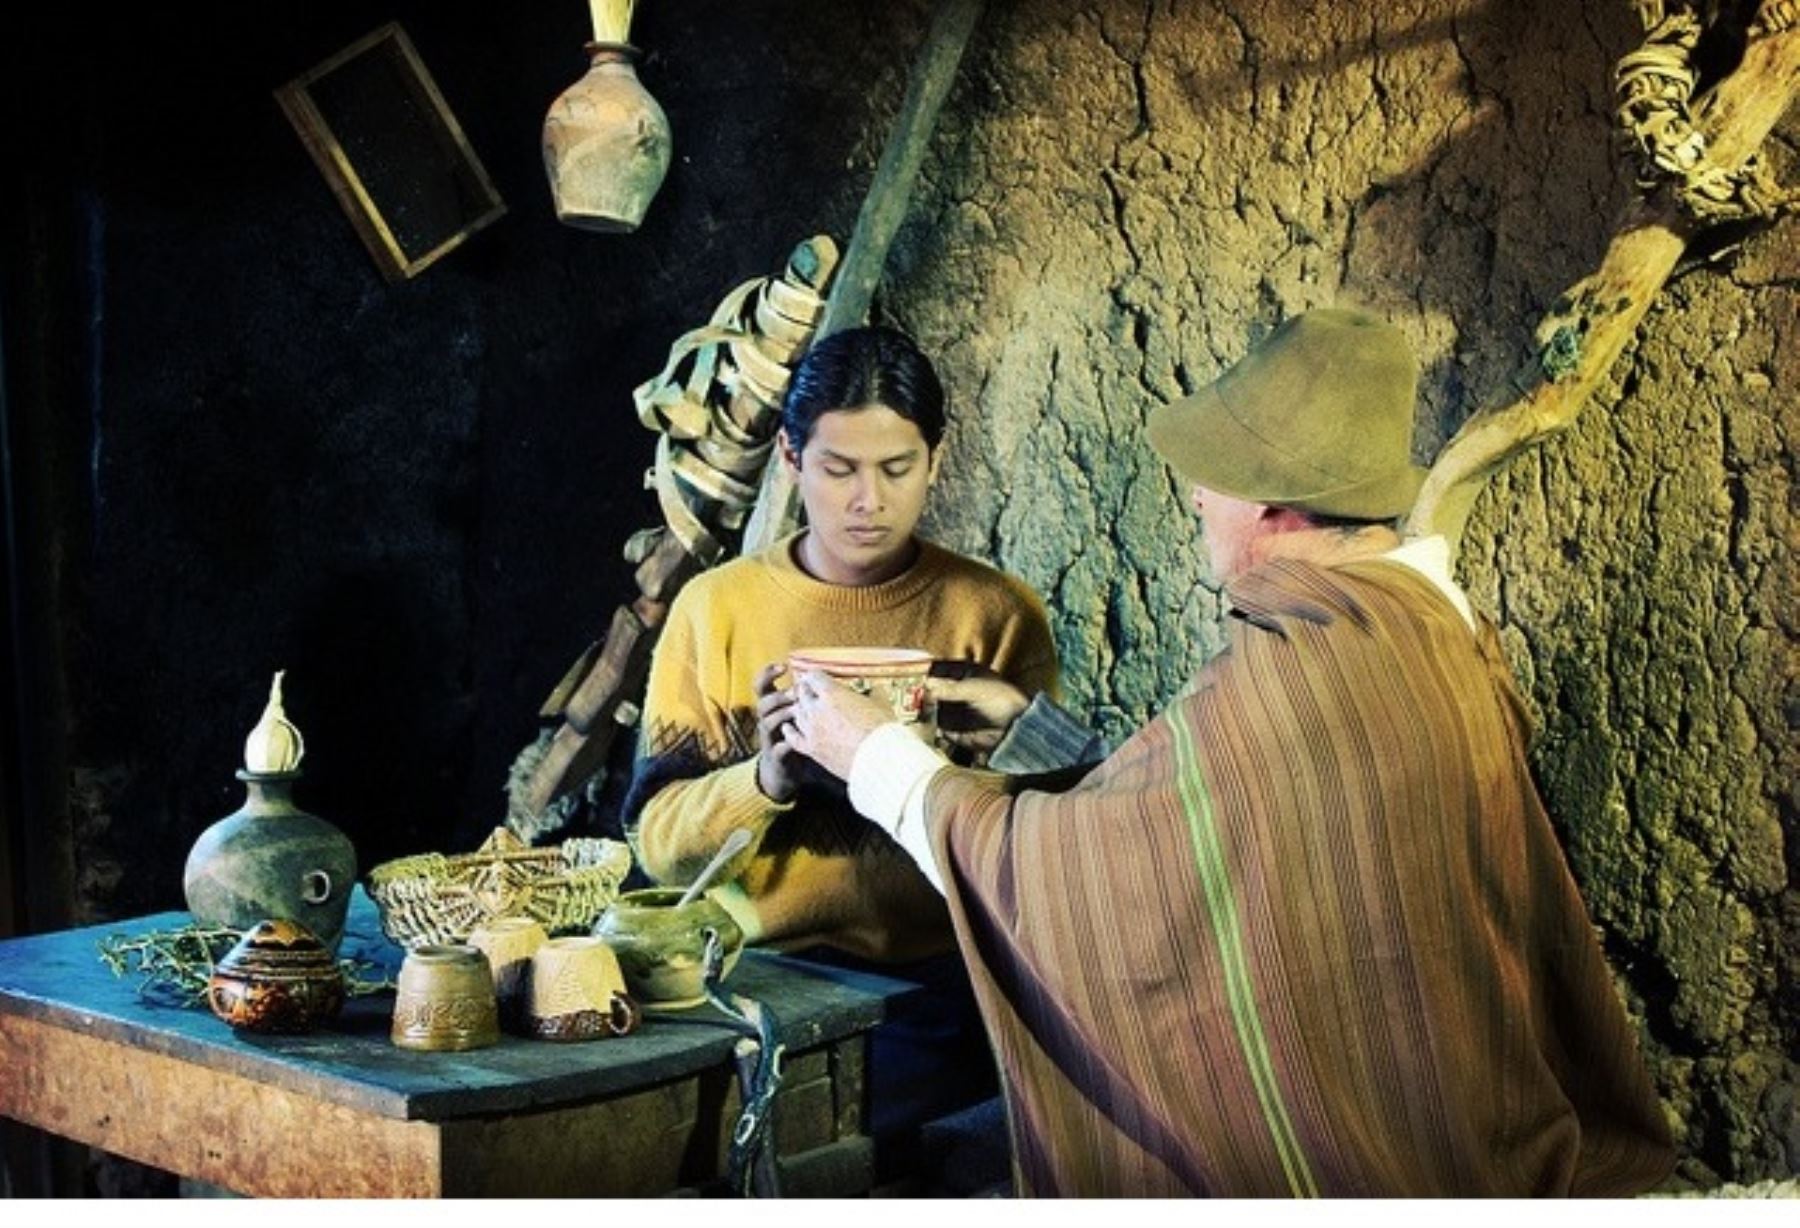 Cinefórum BNP proyecta “Yawar Wanka”, película sobre mitología andina.